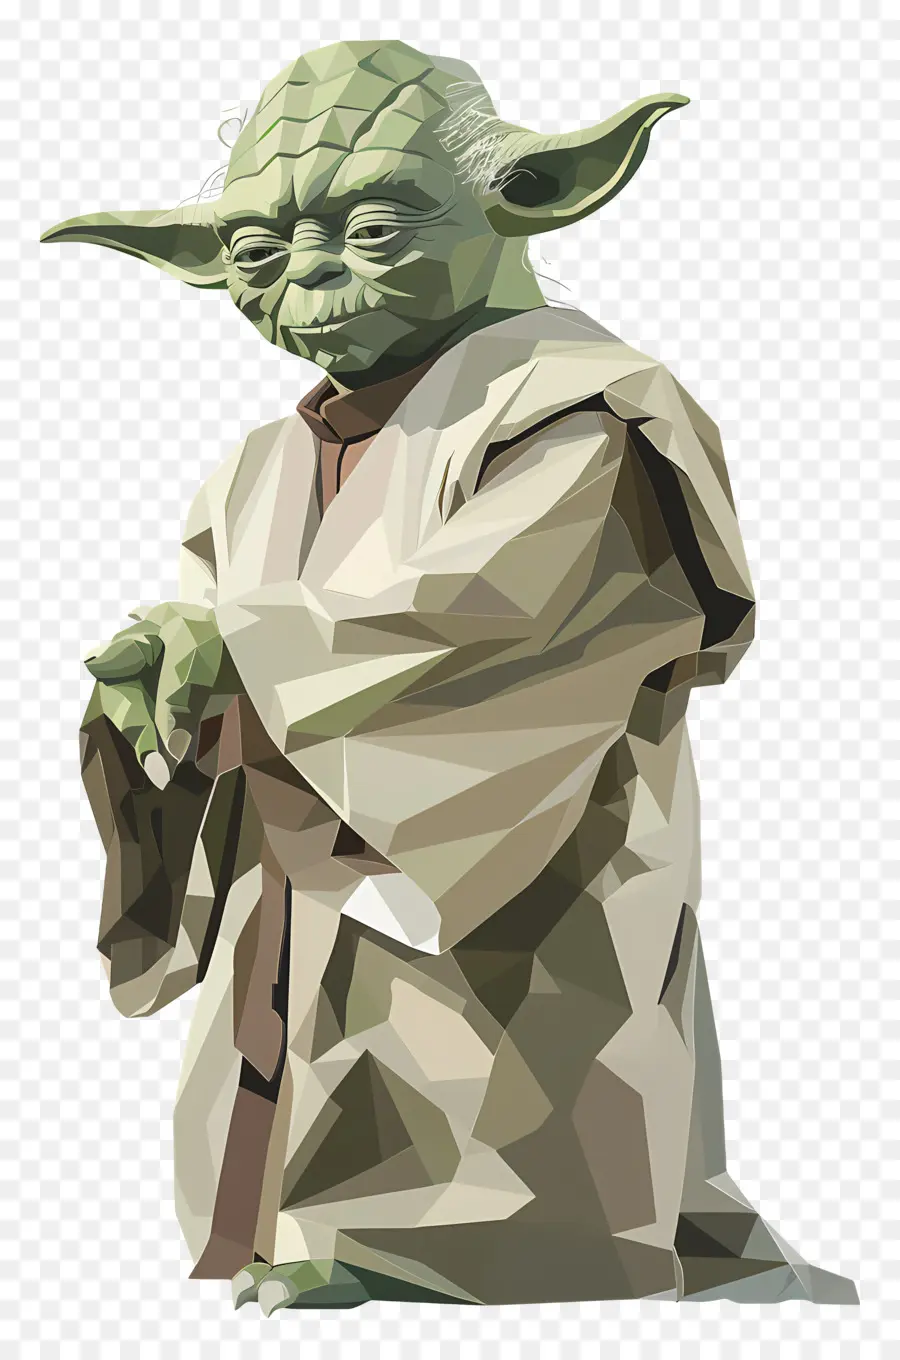 Guerre stellari - Personaggio Yoda in stile tradizionale, franchise di Star Wars